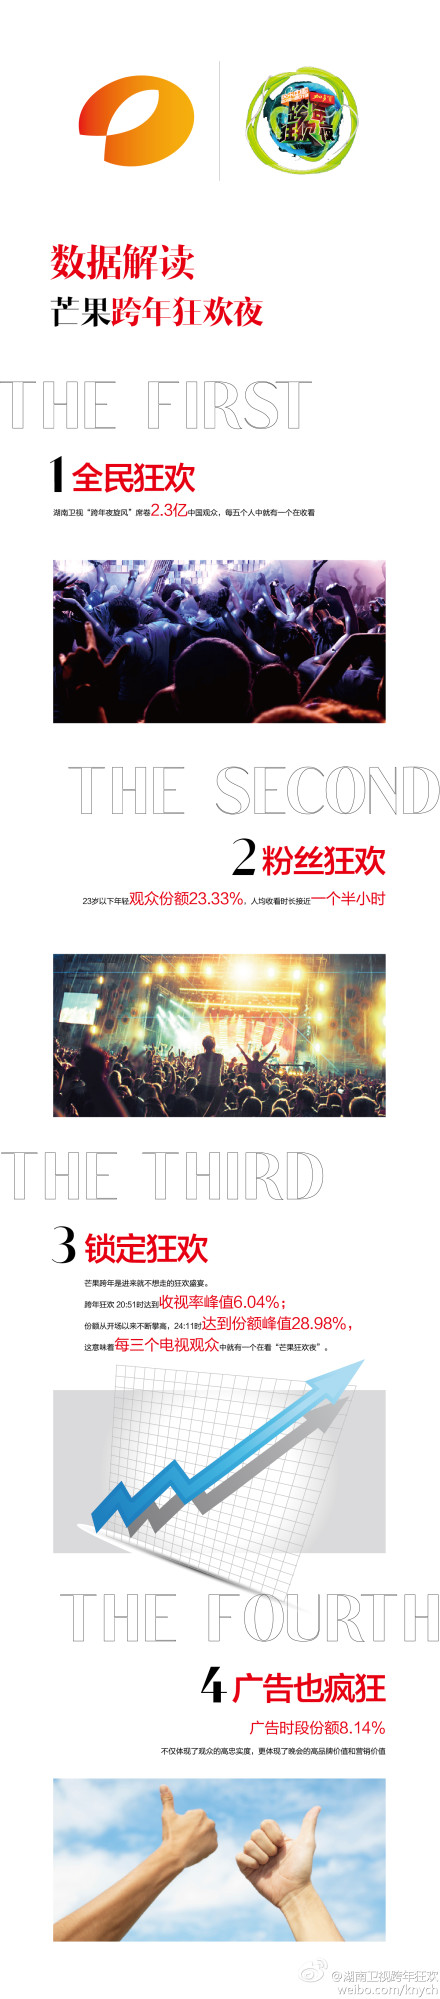 2012-2013湖南衛視跨年演唱會